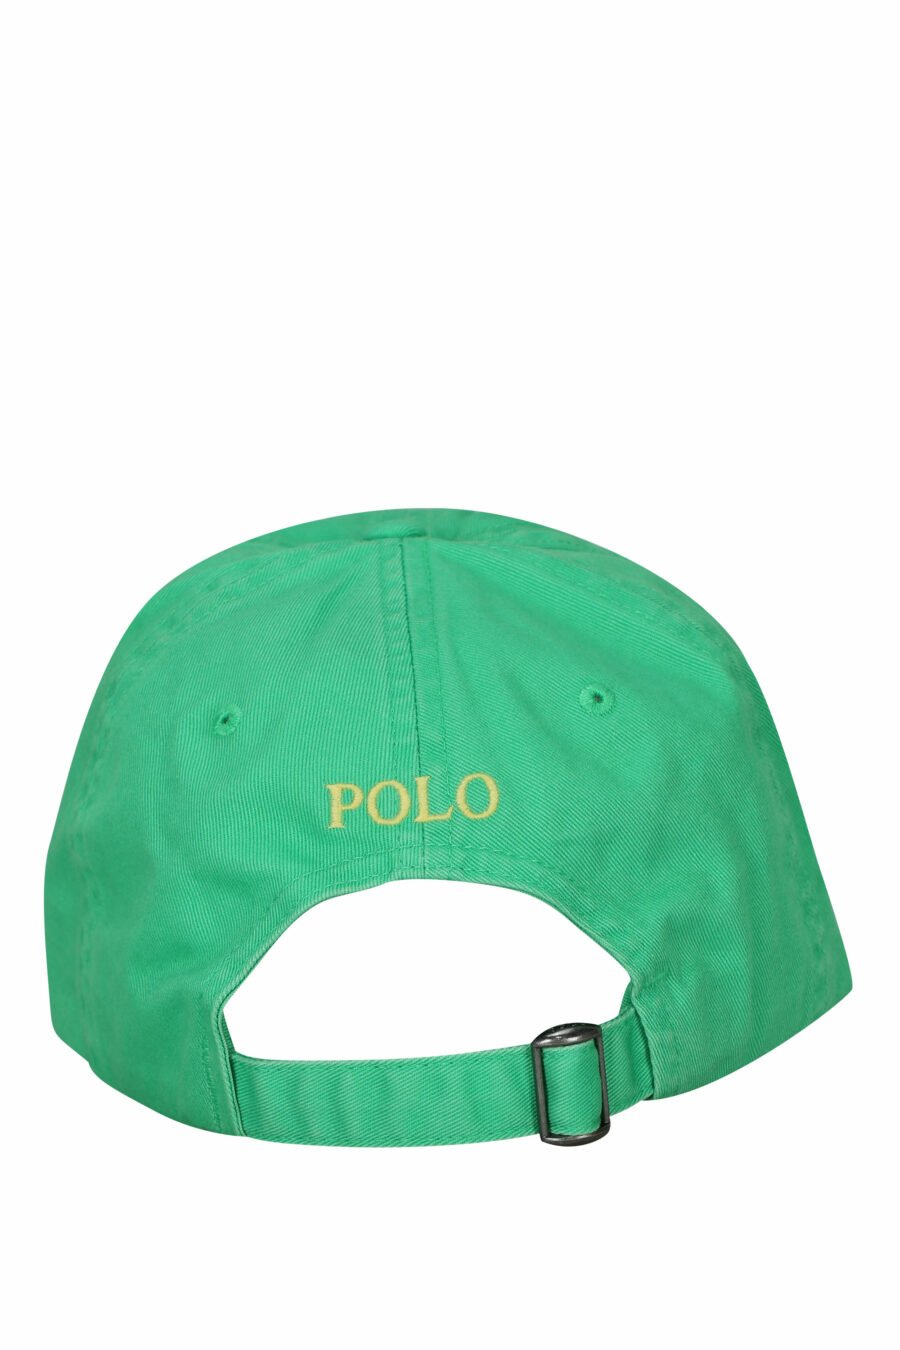 Gorra verde con minilogo "polo" - 3616535875623 1